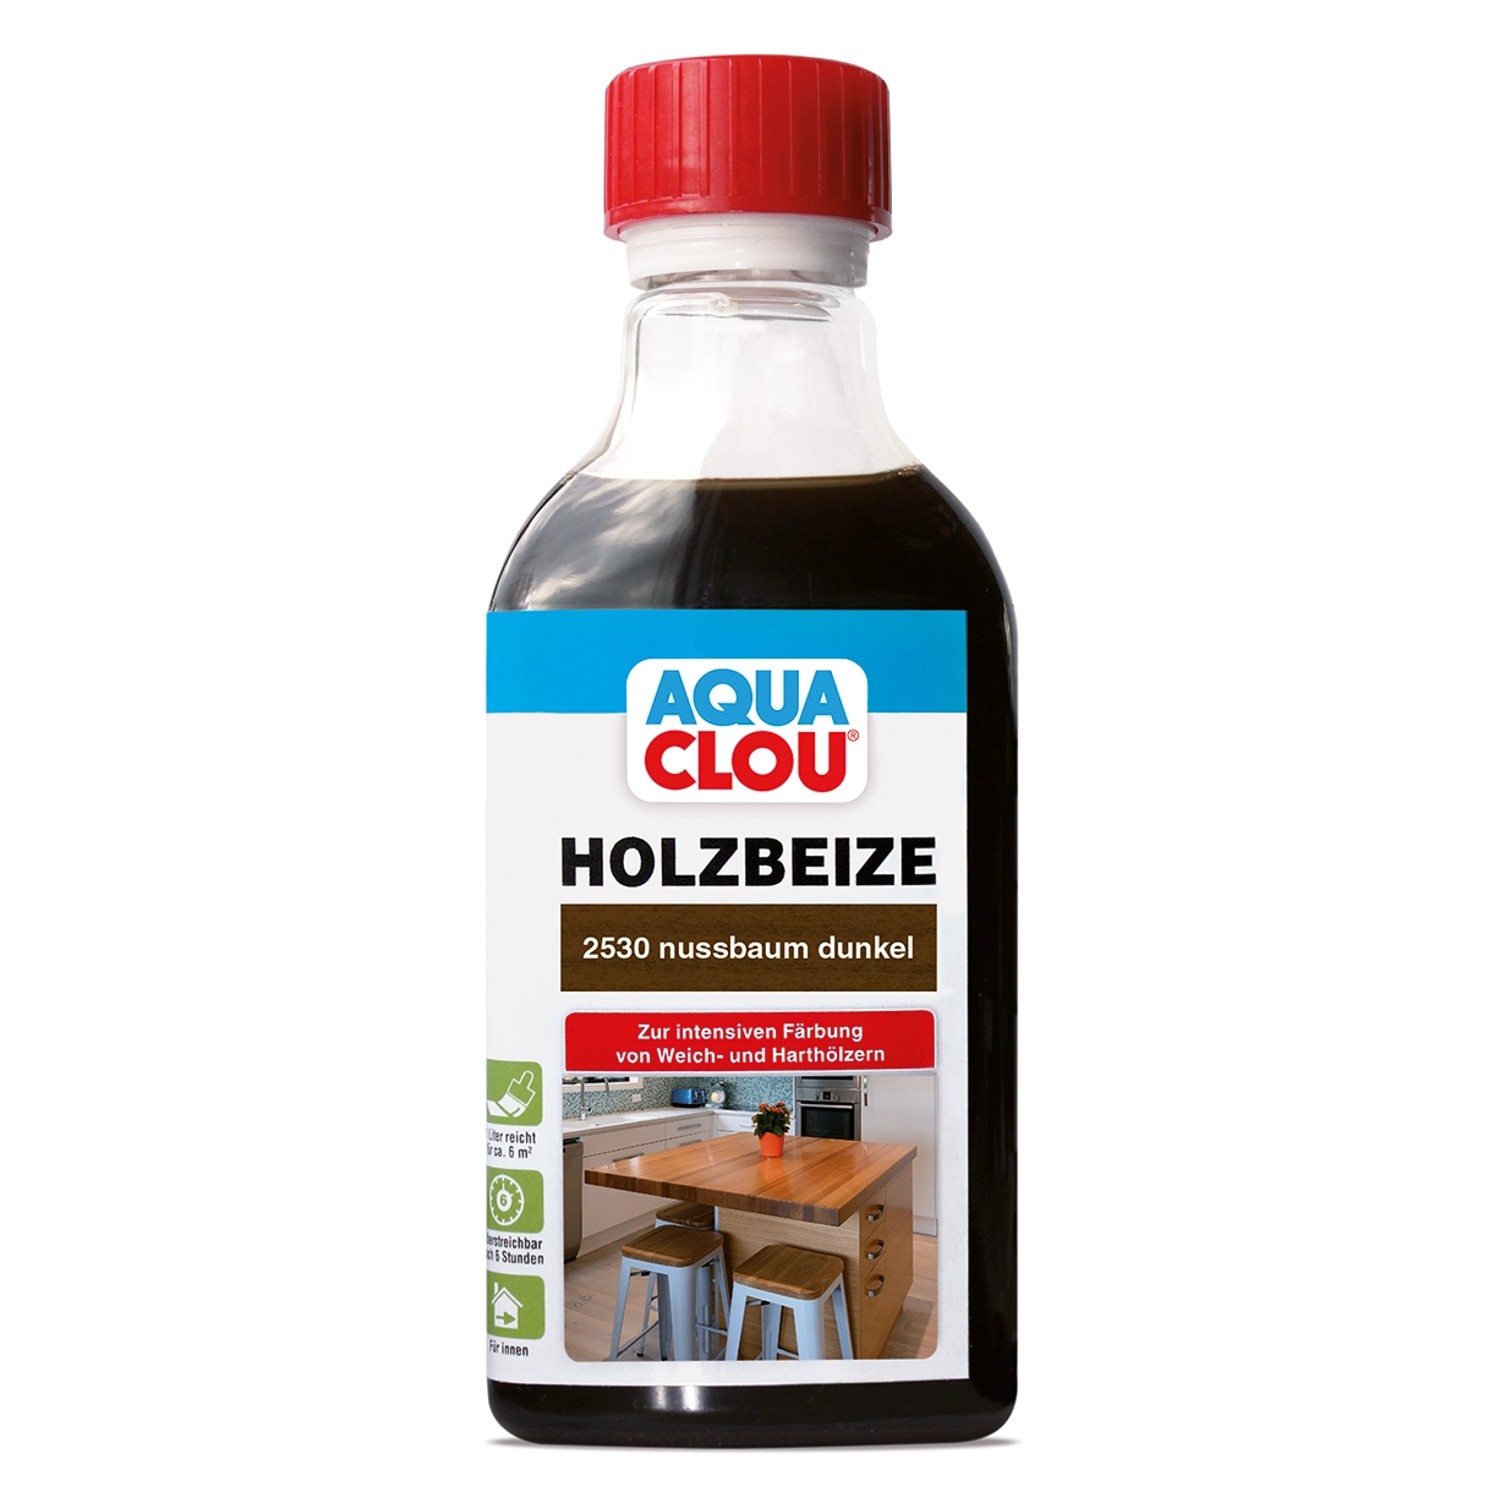 Aqua Clou Holzbeize Nussbaum Dunkel 250 ml